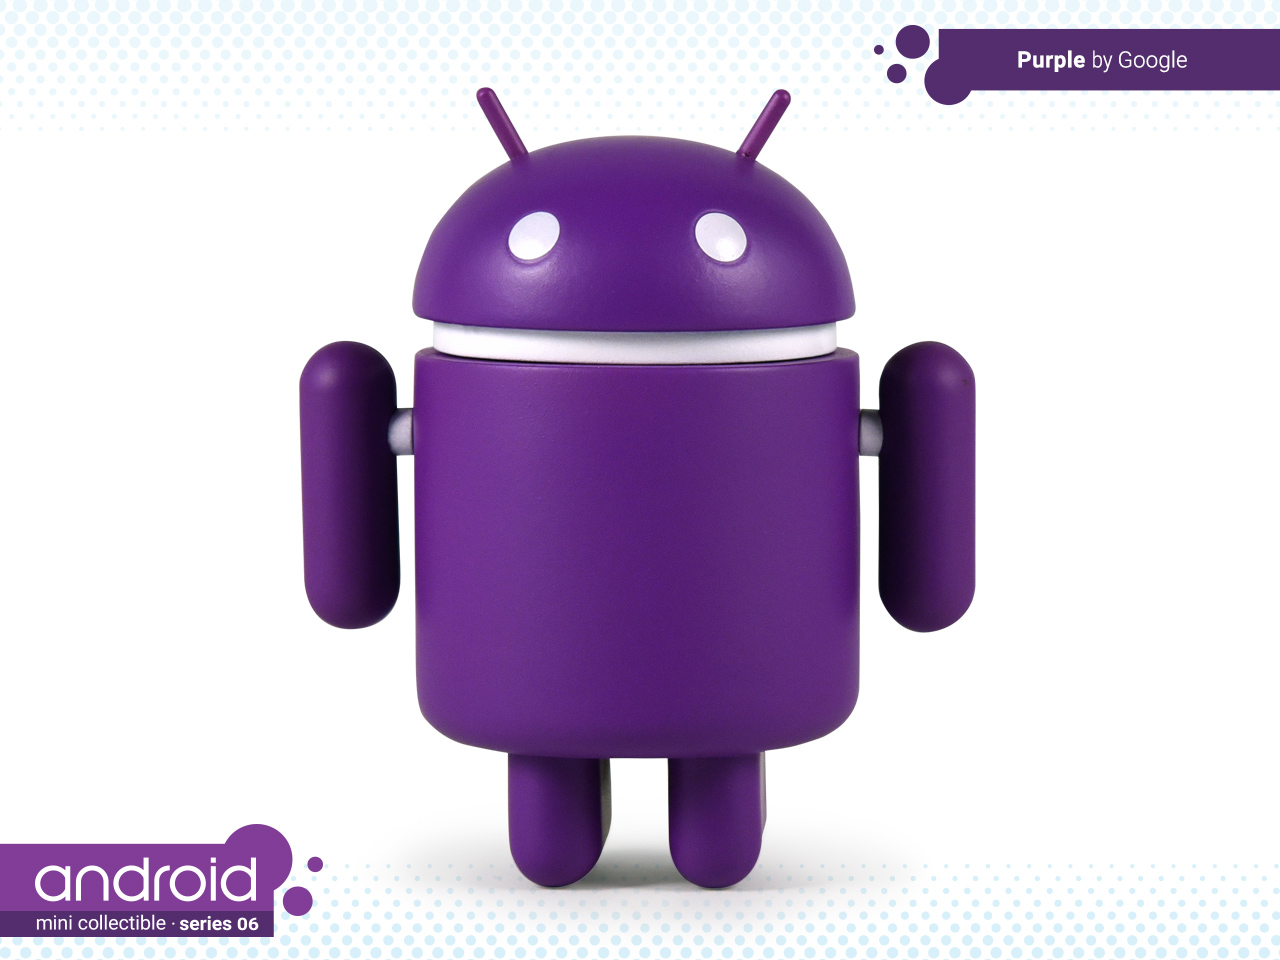 Toy android. Фигурка андроид. Android игрушка. Фигурка андроид зеленый. Фигурка андроид игрушка.